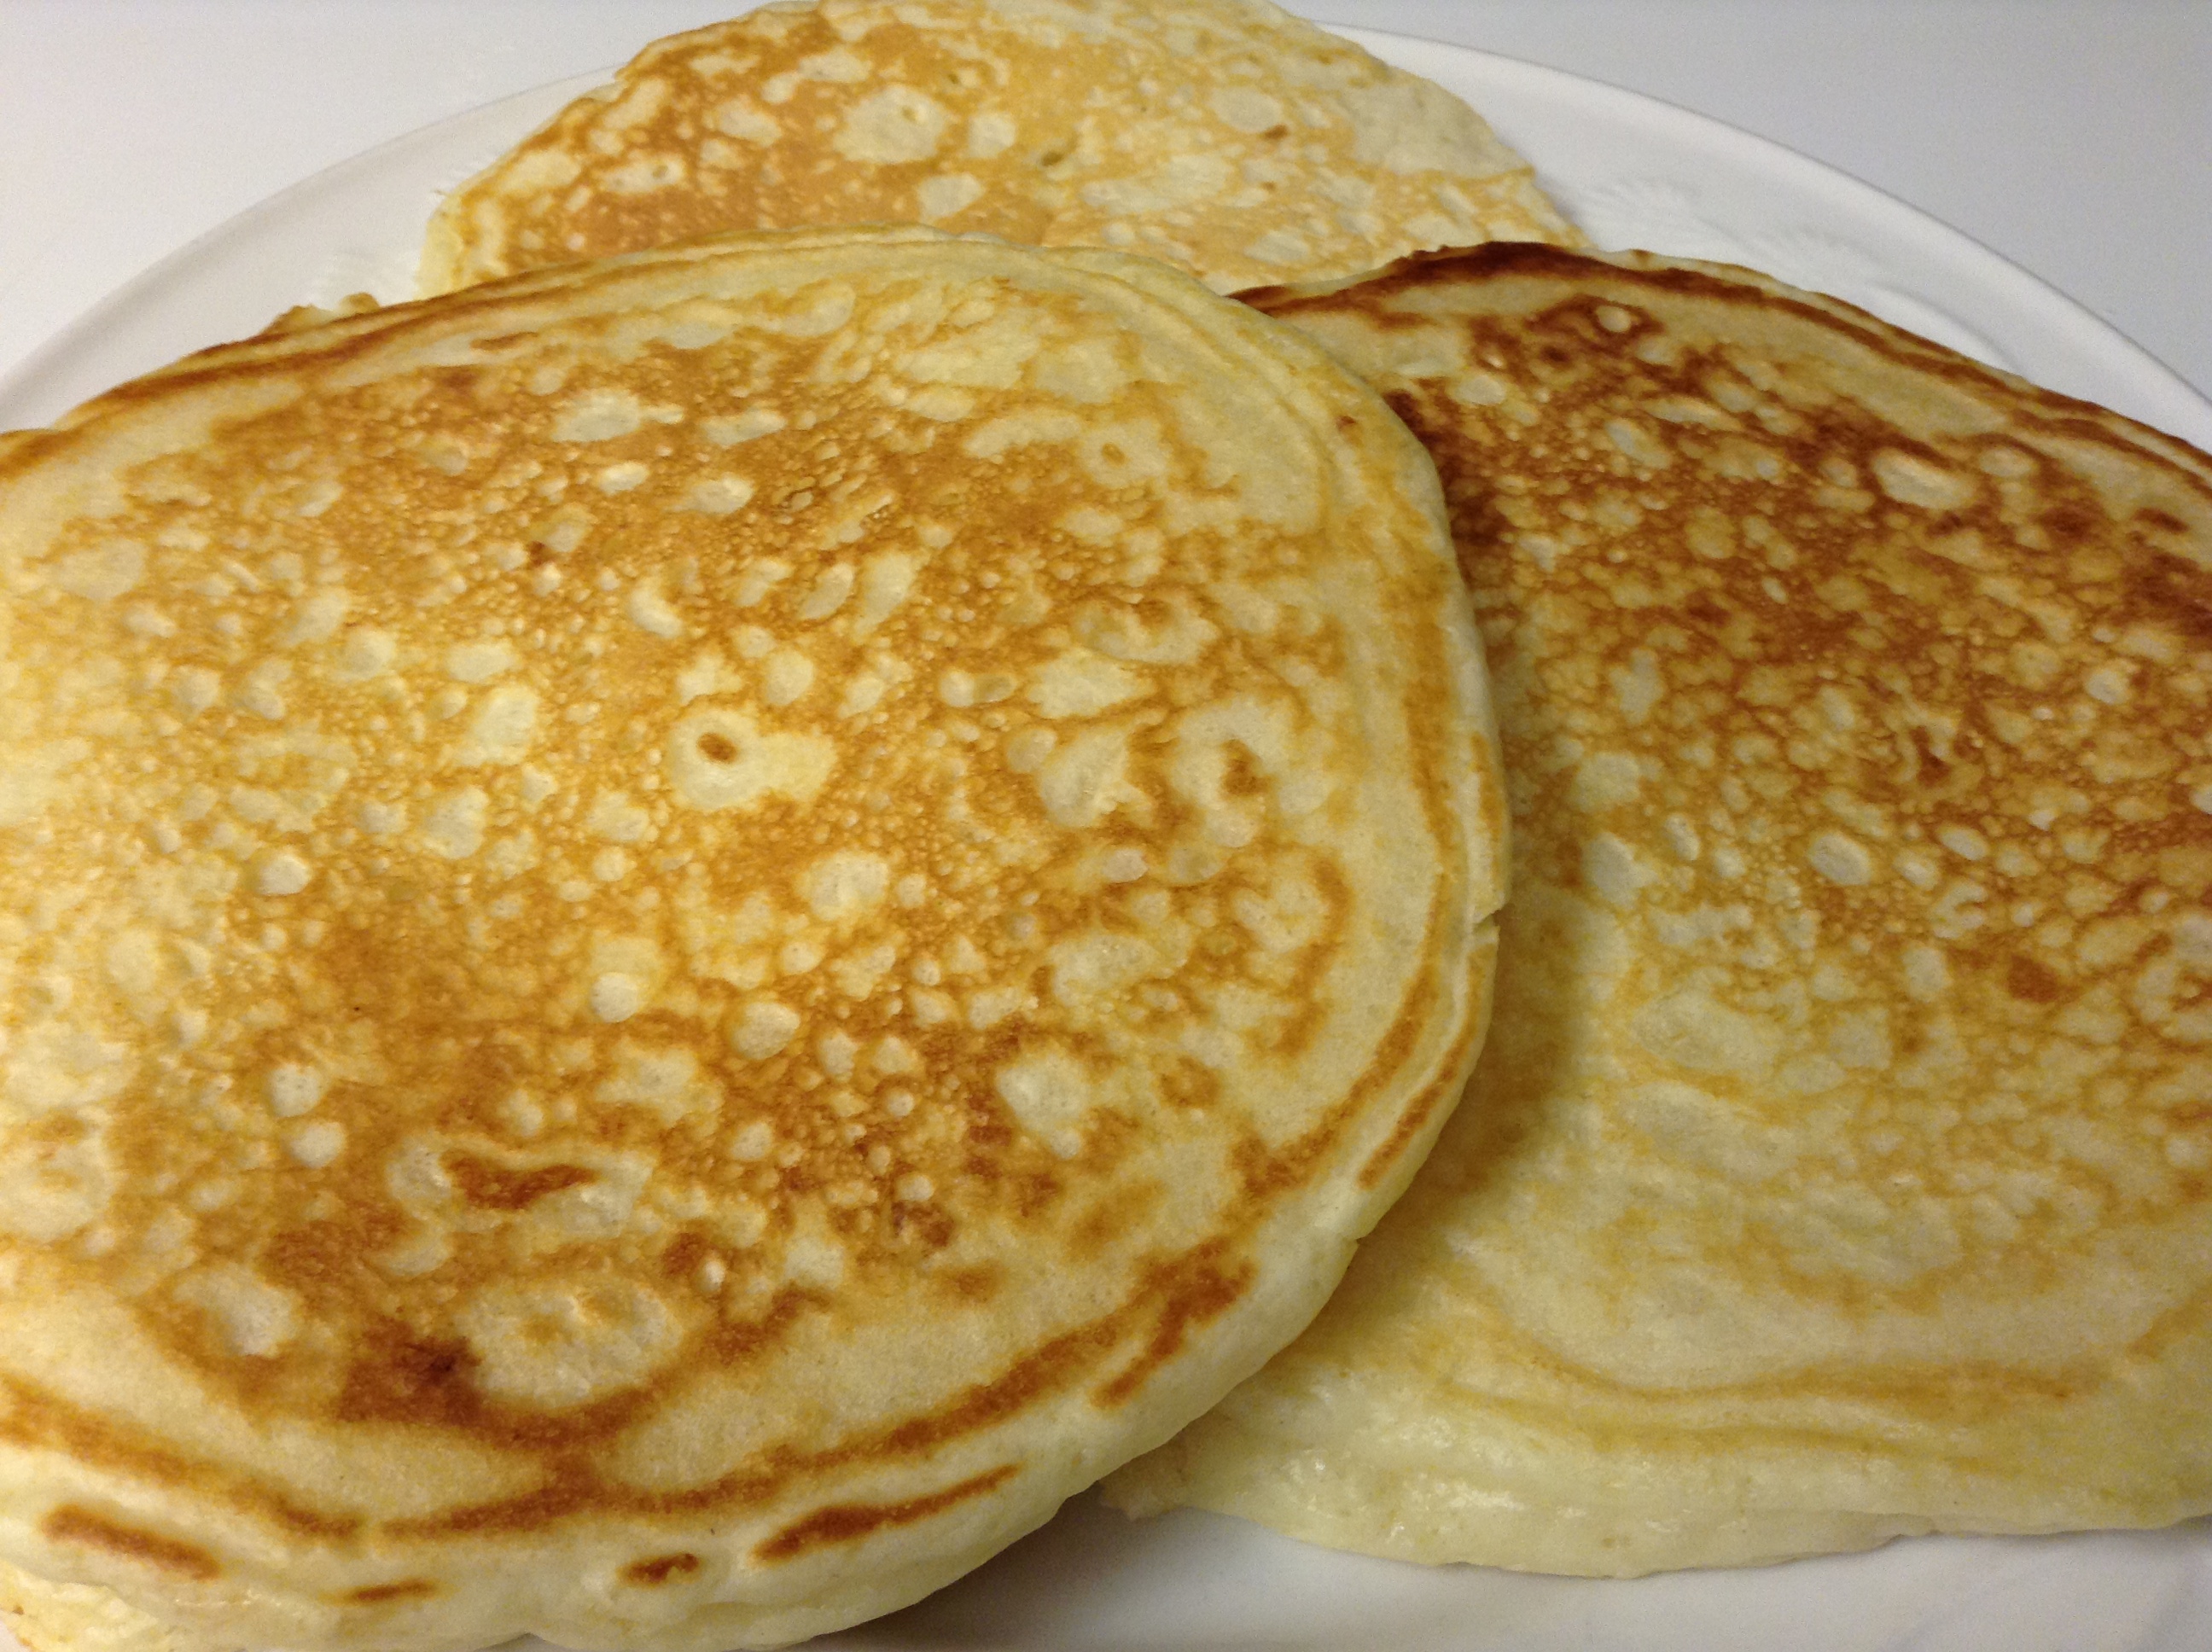 Buttermilk Pancakes from Scratch